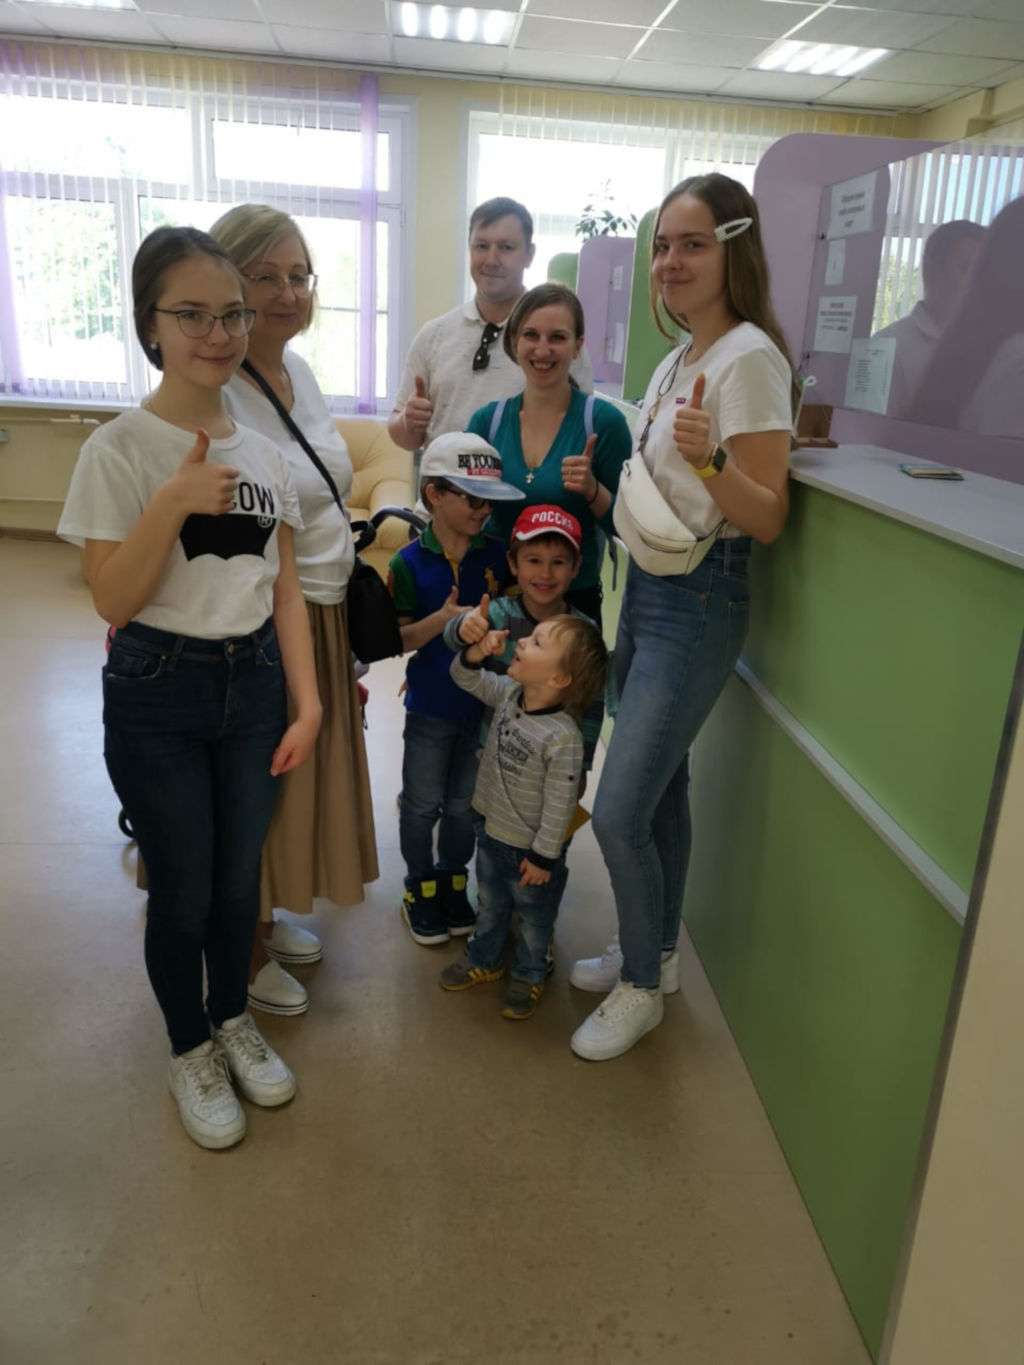 В субботу, 18 мая в больнице состоялся очередной День открытых дверей для РОО «Обьединение многодетных семей города Москвы», в рамках которого специалисты разных профилей проконсультировали всех желающих. Всего было выполнено более 300 консультаций.